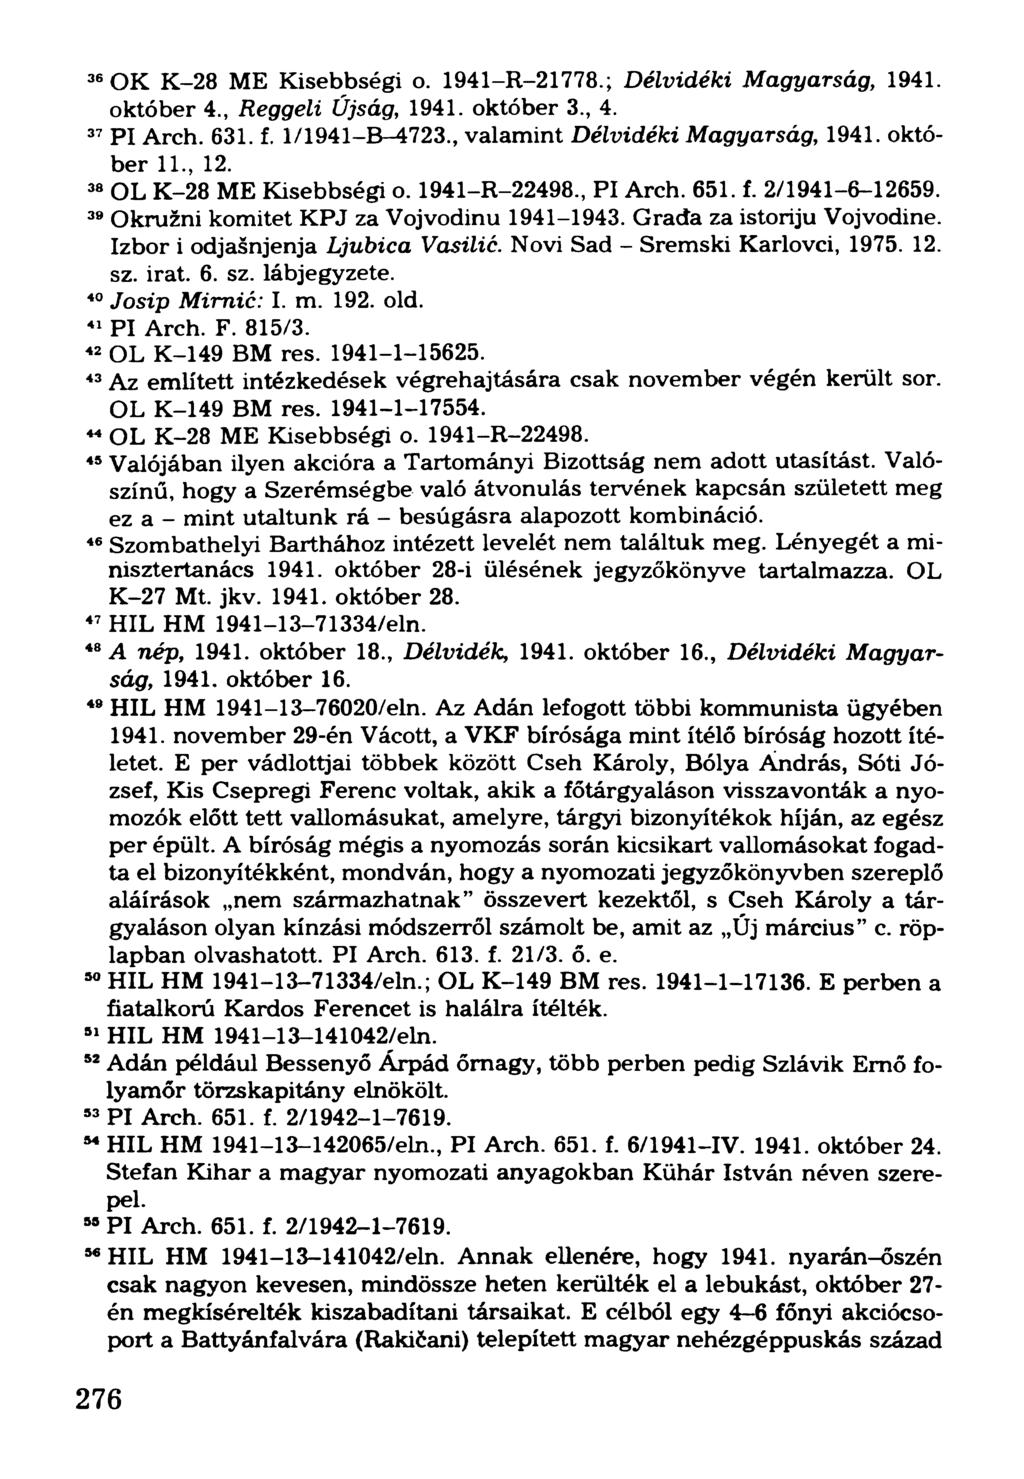 36OK K-28 ME Kisebbségi o. 1941-R-21778.; Délvidéki Magyarság, 1941. október 4., Reggeli Újság, 1941. október 3., 4. 37P l Arch. 631. f. 1/1941-B-4723., valamint Délvidéki Magyarság, 1941. október 11.